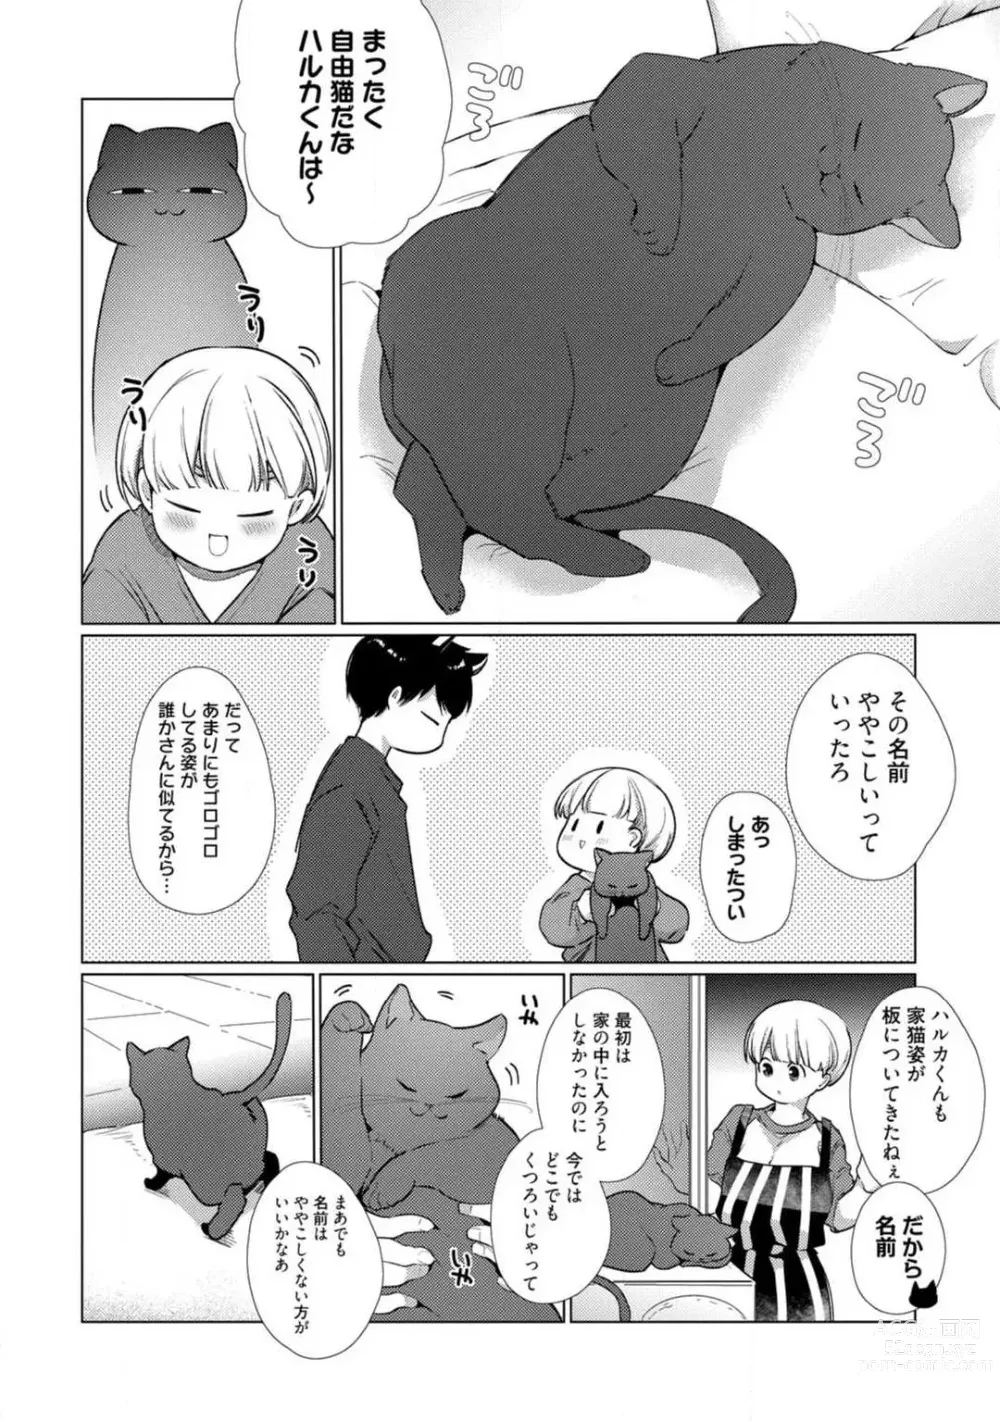 Page 312 of manga Kuroneko Osananajimi ga Nigashite Kurenai. 1-10